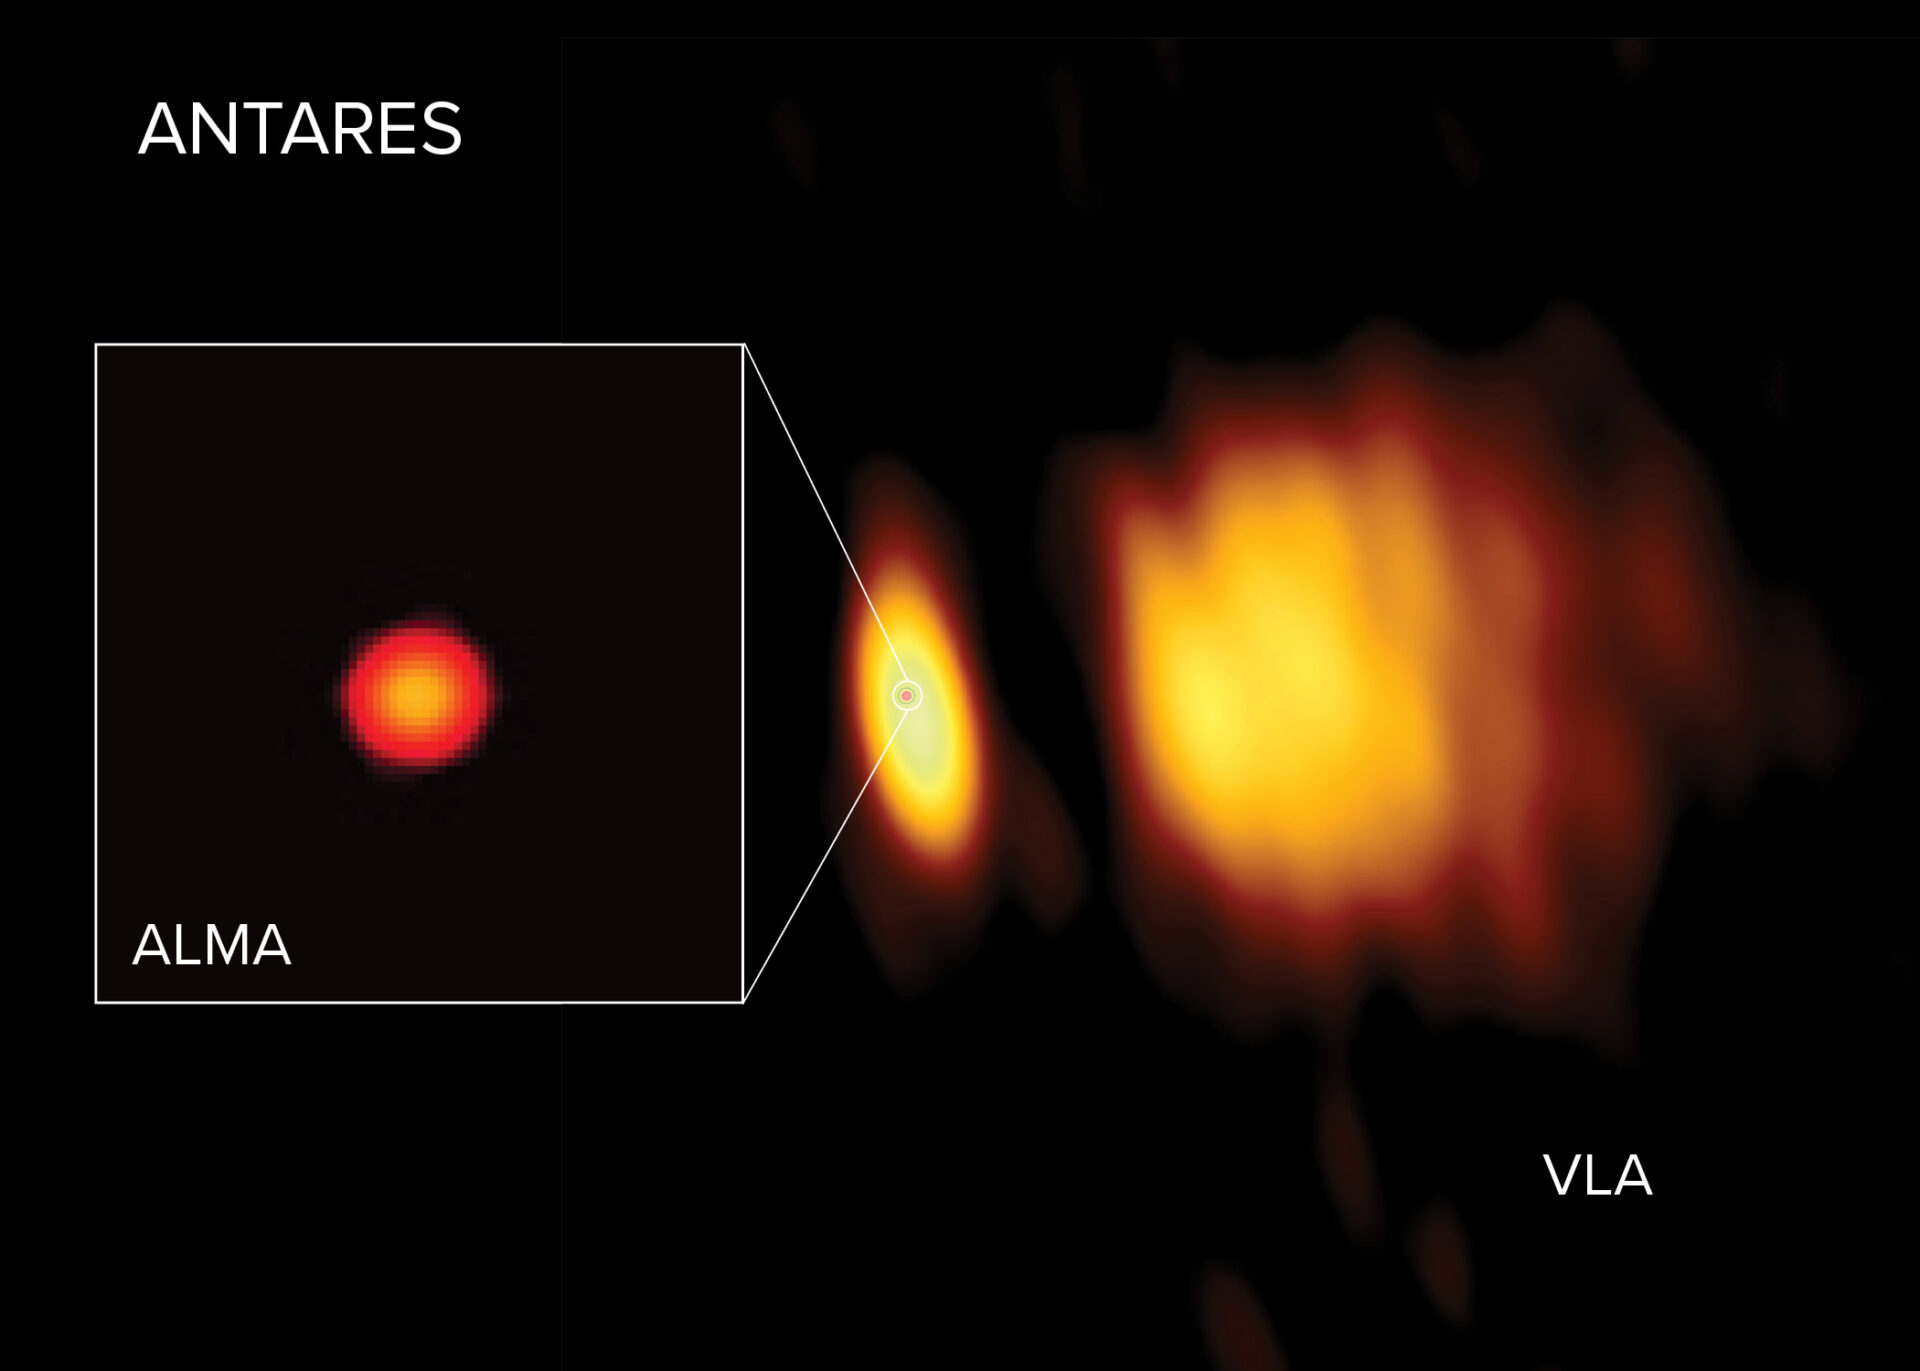 Imágenes de radio de Antares obtenidas con ALMA y el VLA. ALMA observó Antares cerca de su superficie en longitudes de onda más cortas, mientras que las longitudes de onda más largas observadas por el VLA revelaron la atmósfera de la estrella, más distante de la superficie. En la imagen del VLA se aprecia un enorme viento a la derecha, expulsado por Antares y encendido por su estrella compañera, más pequeña y caliente, Antares B. Créditos: ALMA (ESO/NAOJ/NRAO), E. O’Gorman; NRAO/AUI/NSF, S. Dagnello